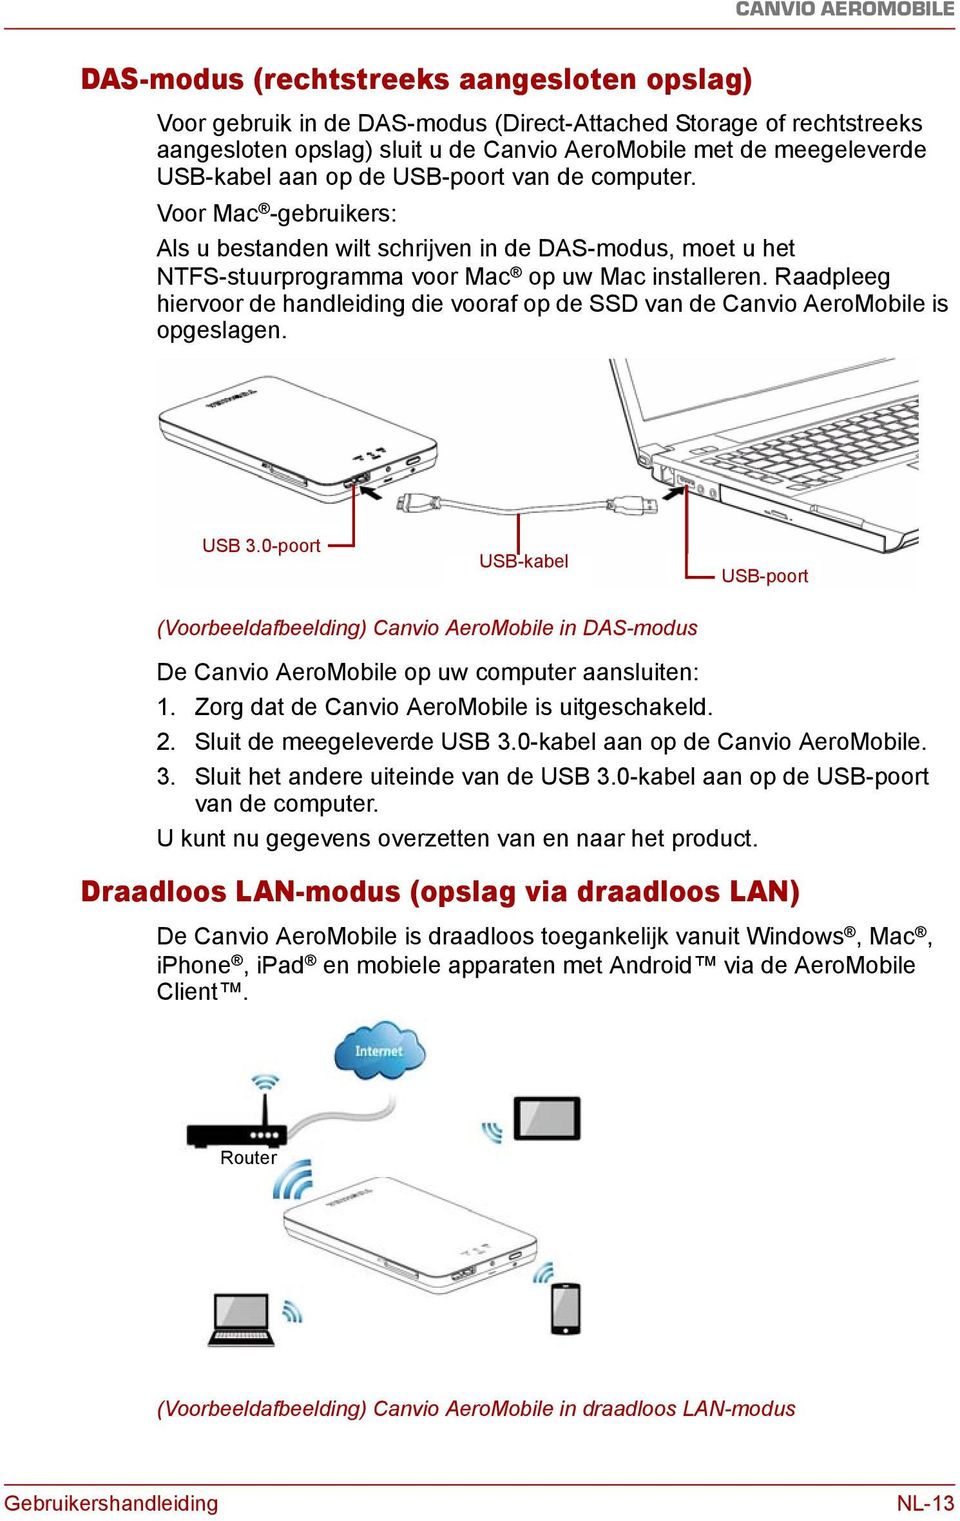 Raadpleeg hiervoor de handleiding die vooraf op de SSD van de Canvio AeroMobile is opgeslagen. USB 3.